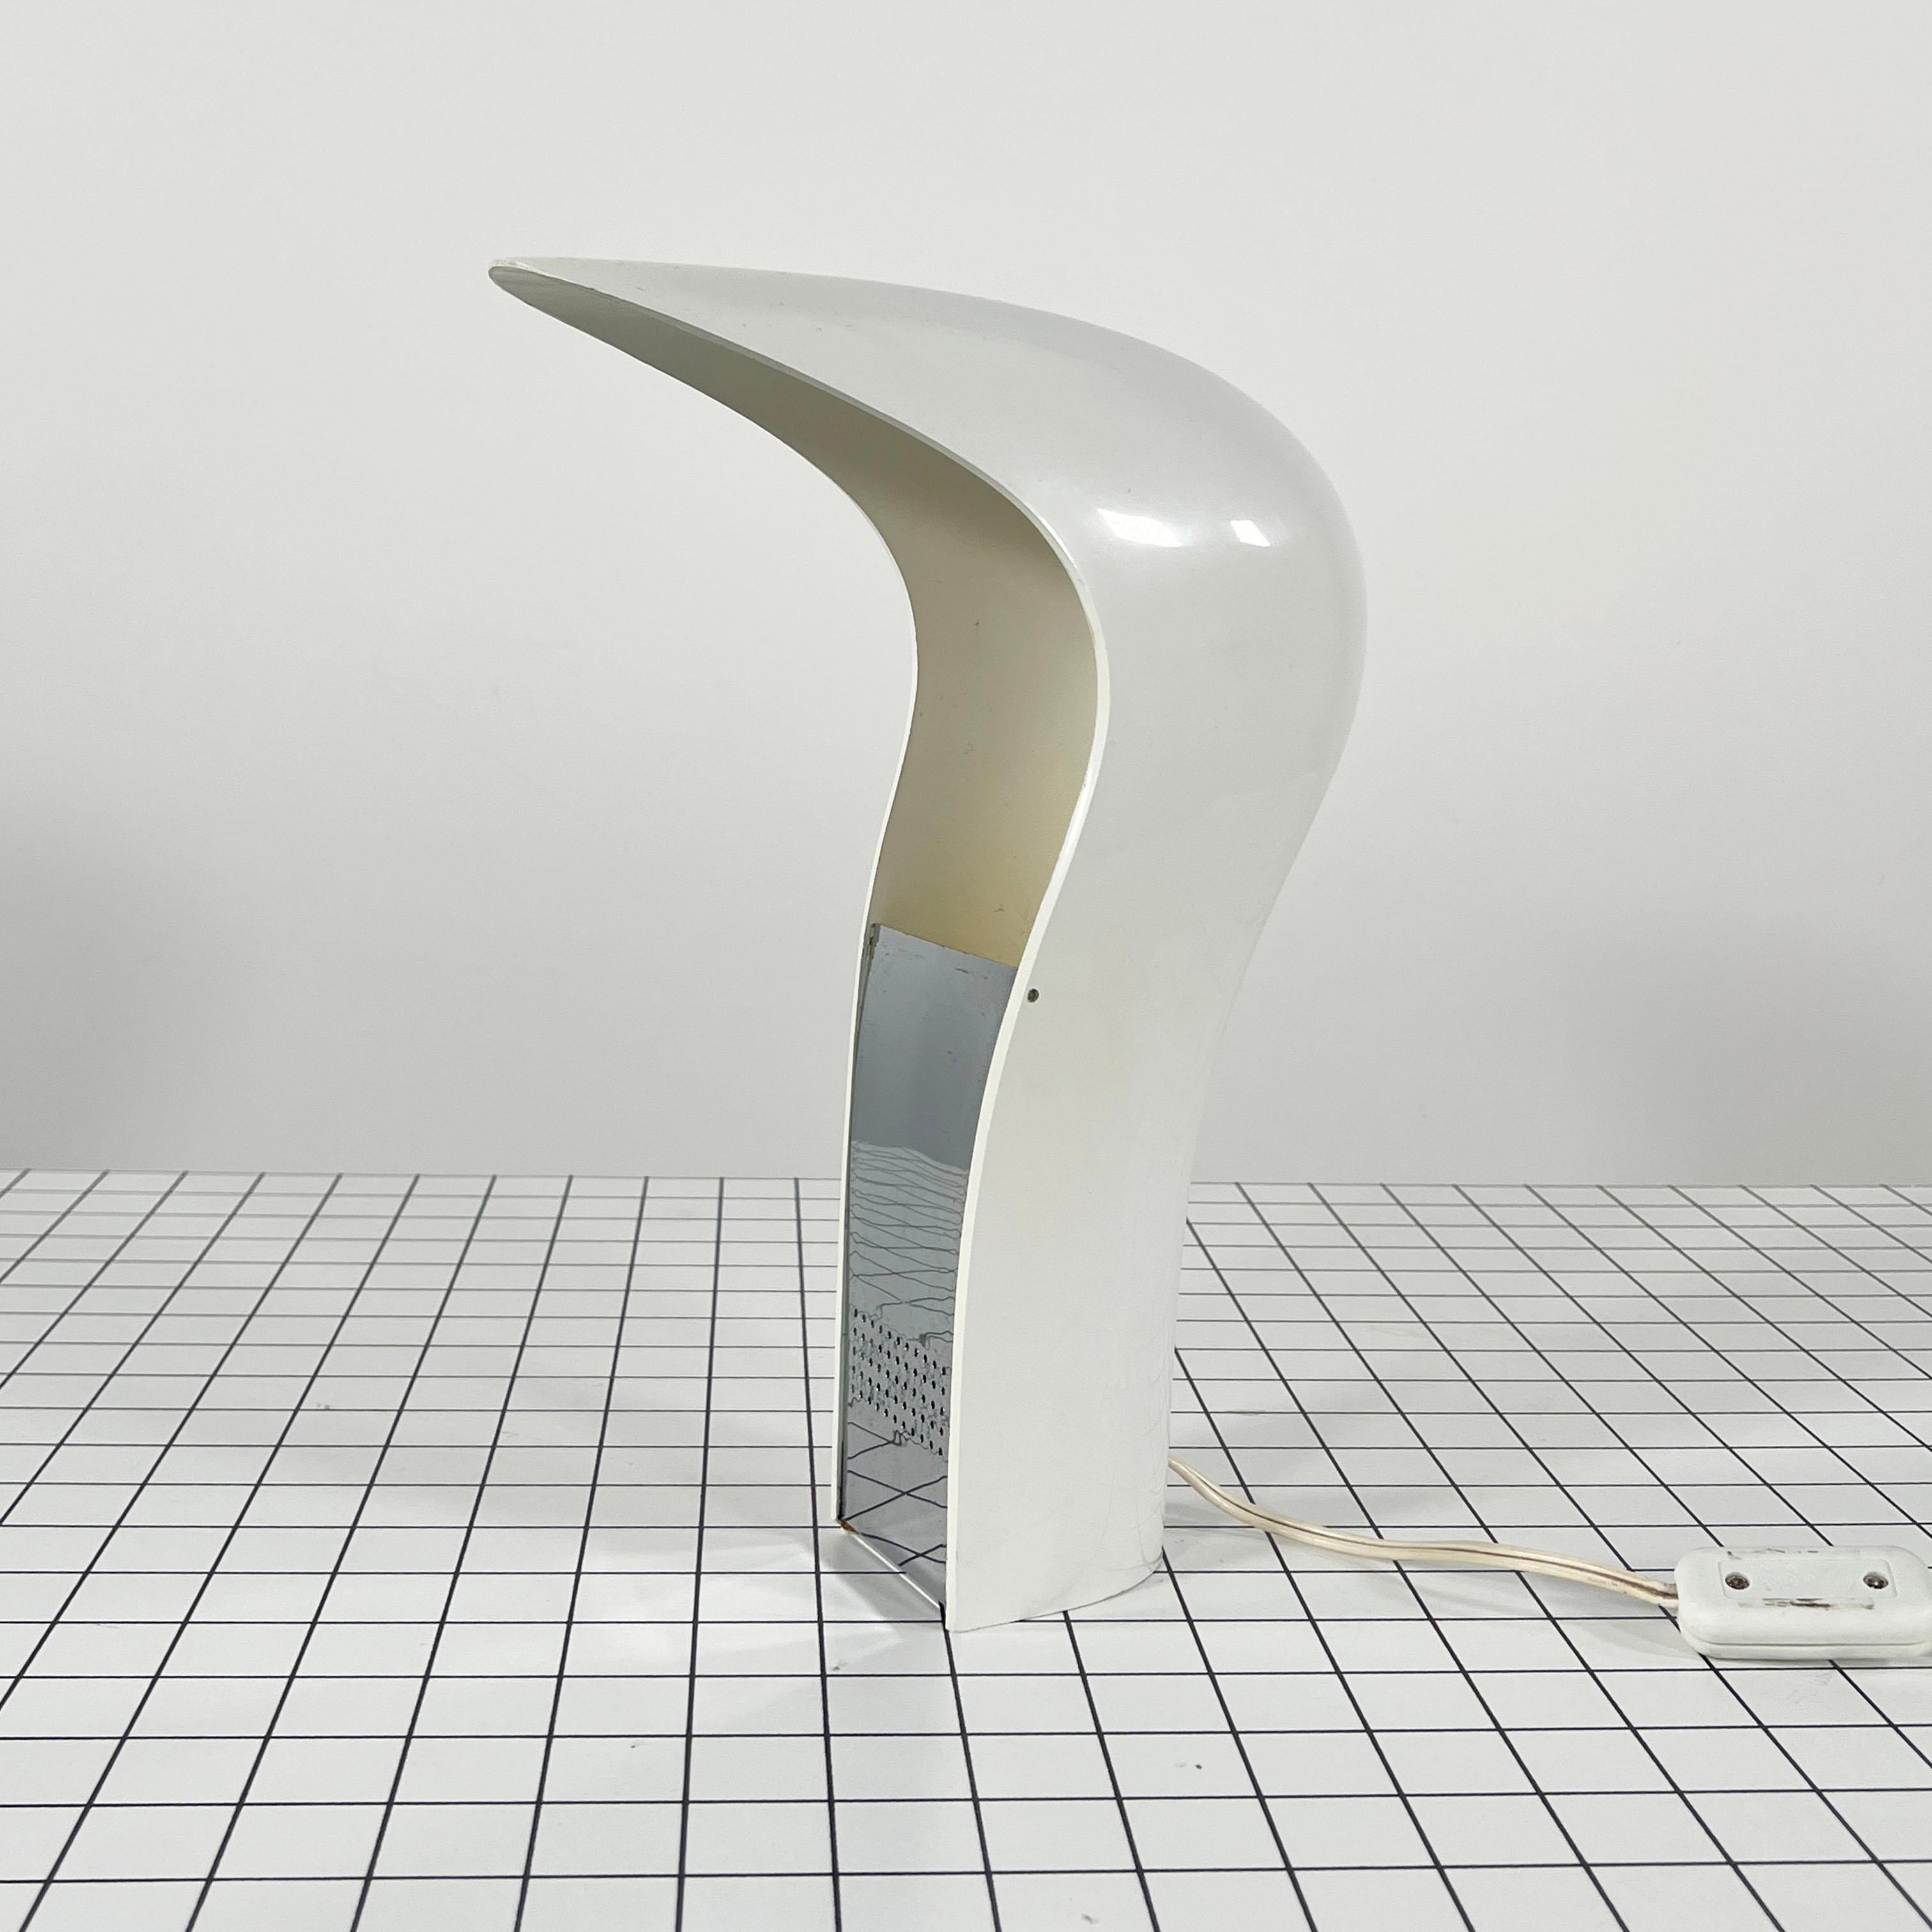 White 'Pelota' Desk Lamp by Cesare Casati for Lamperti Studio D.A., Italy, 1970s For Sale 4